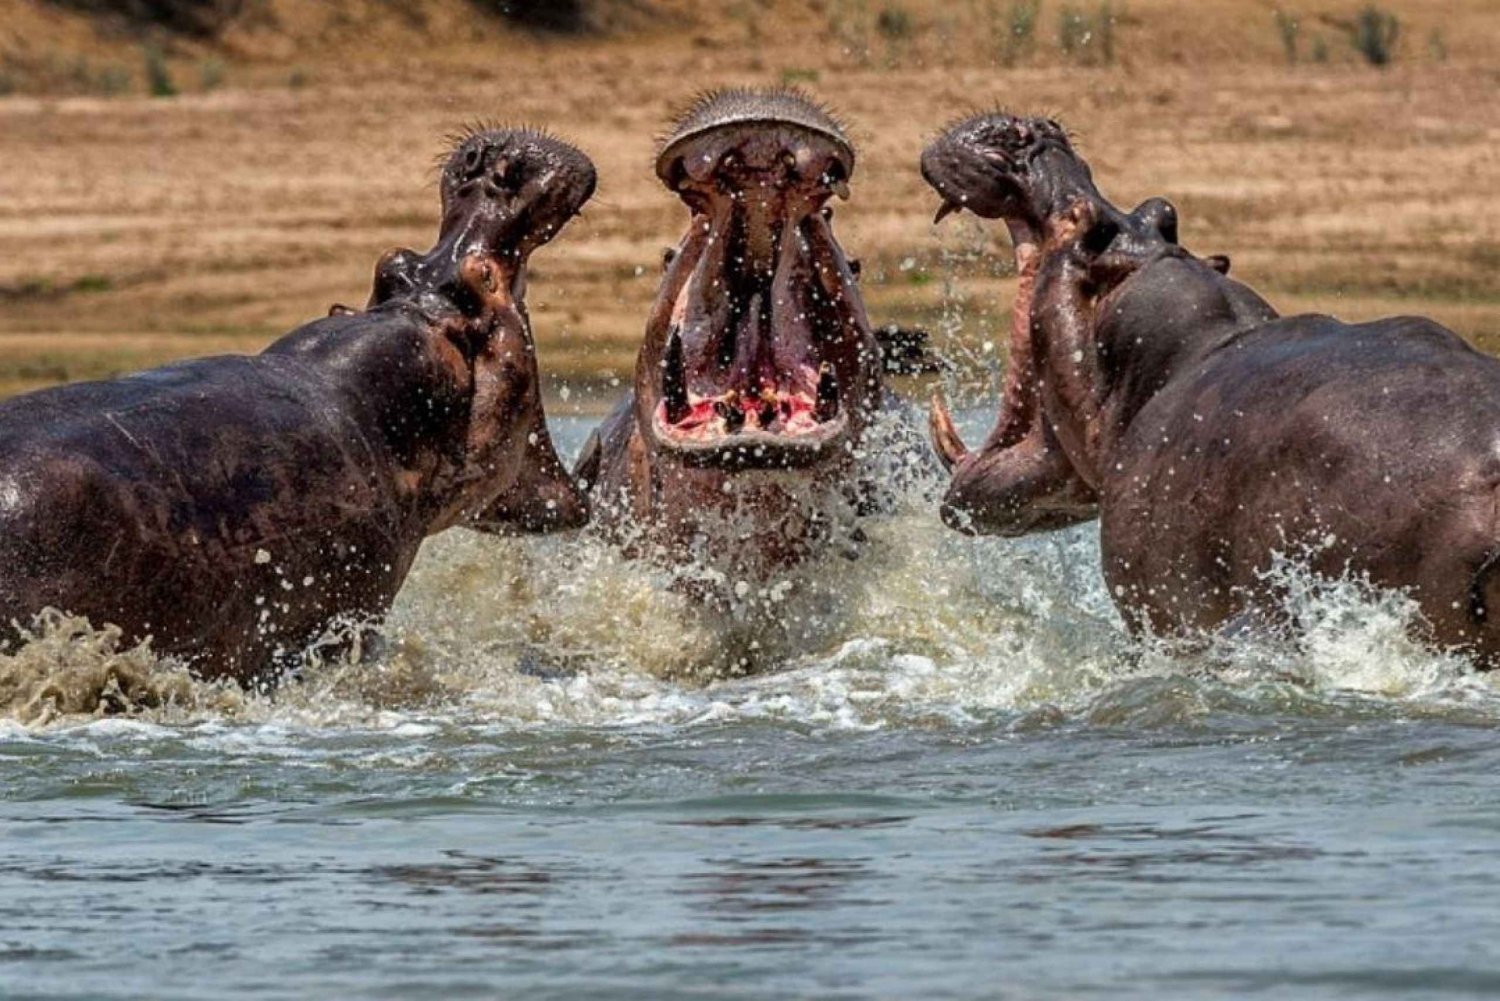 Excursión al Parque Natural de Isimangaliso y Crucero en Barco con Hipopótamos desde Durban